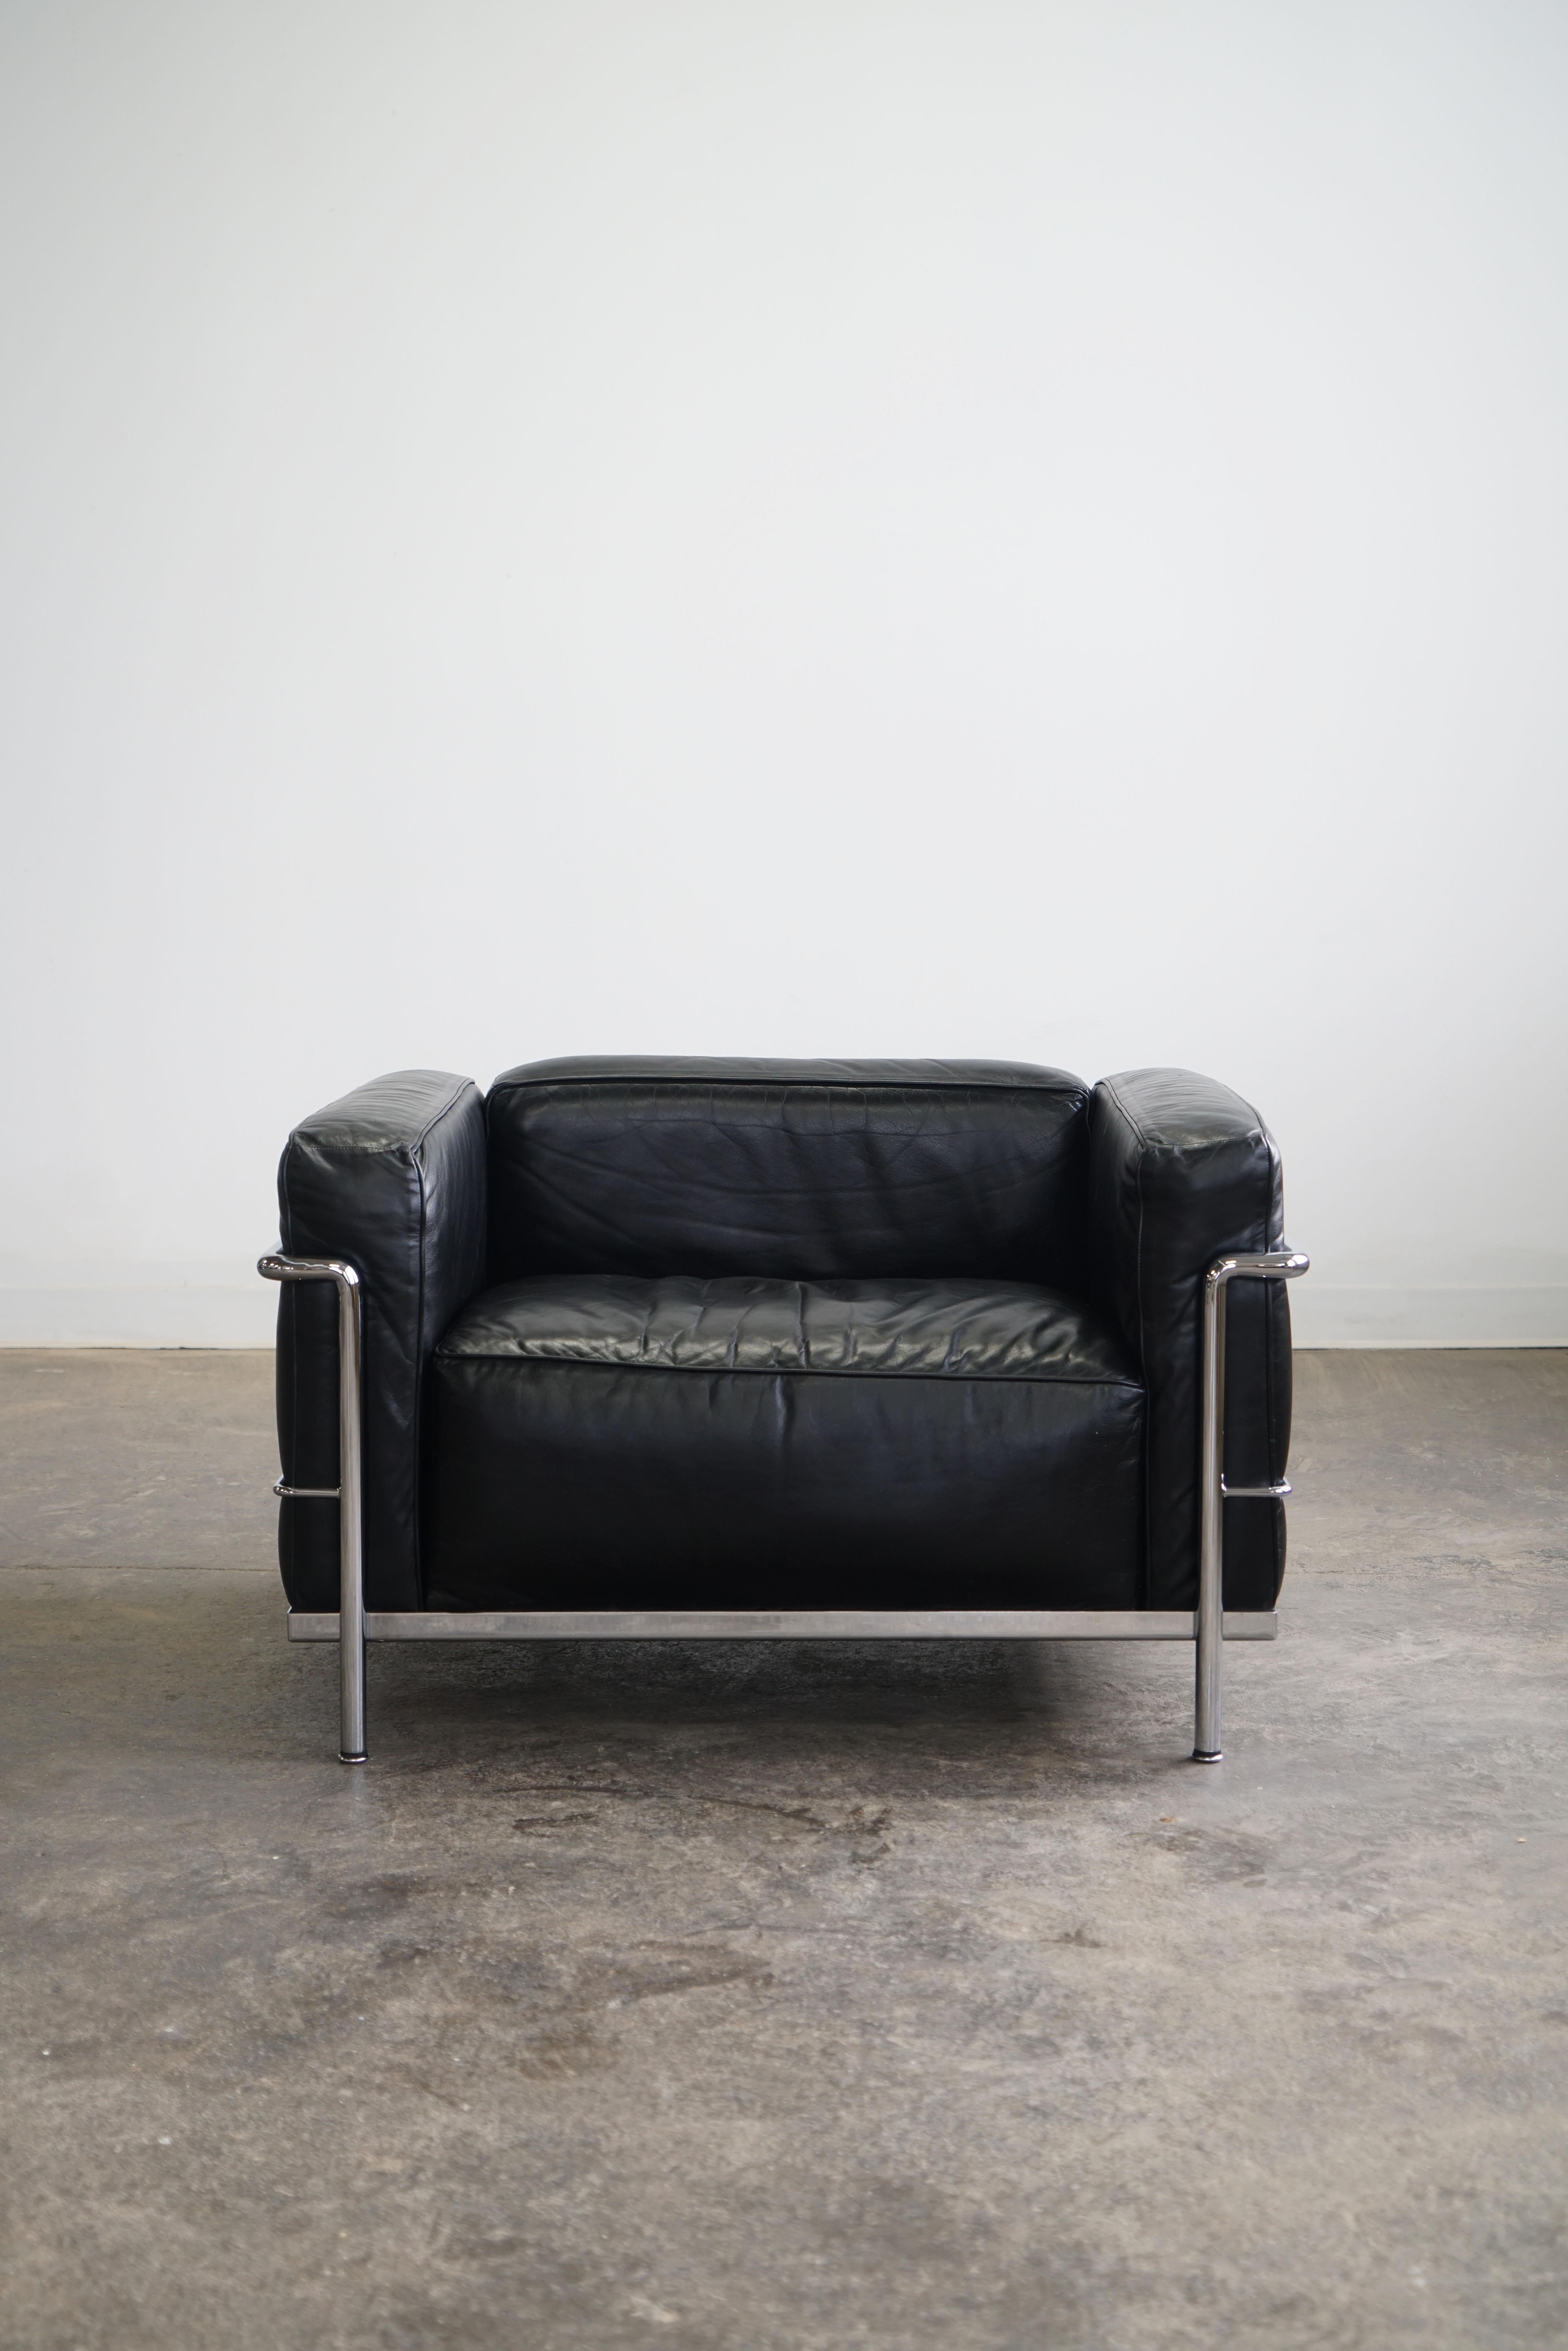 Paire de fauteuils LC3 Grand Modele pour Cassina.
Cuir noir et acier chromé.

L'une des chaises les plus emblématiques, la LC3 a été conçue en 1928 par Le Corbusier, Pierre Jeanneret et Charlotte Perriand. Cette chaise est un véritable symbole